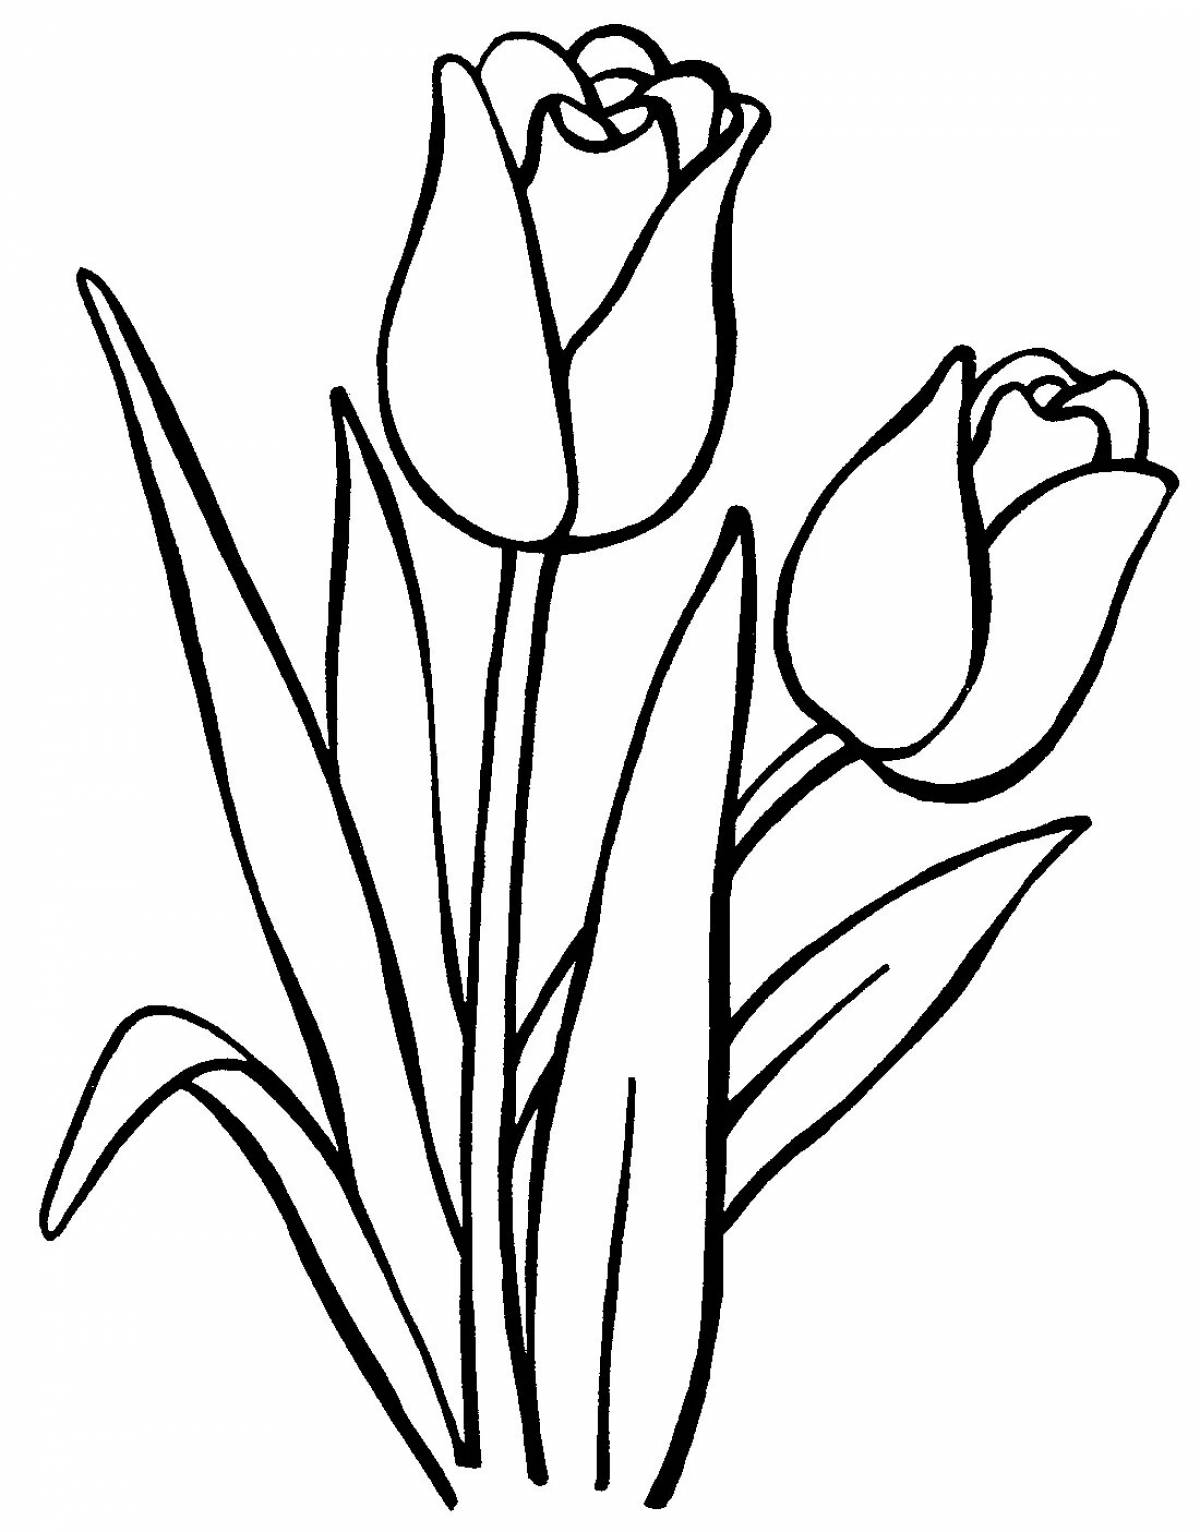 Распечатать цветок тюльпан для вырезания. Тюльпан Шренка раскраска. Тюльпан раскраска. Тюльпан раскраска для детей. Раскраска цветы тюльпаны.